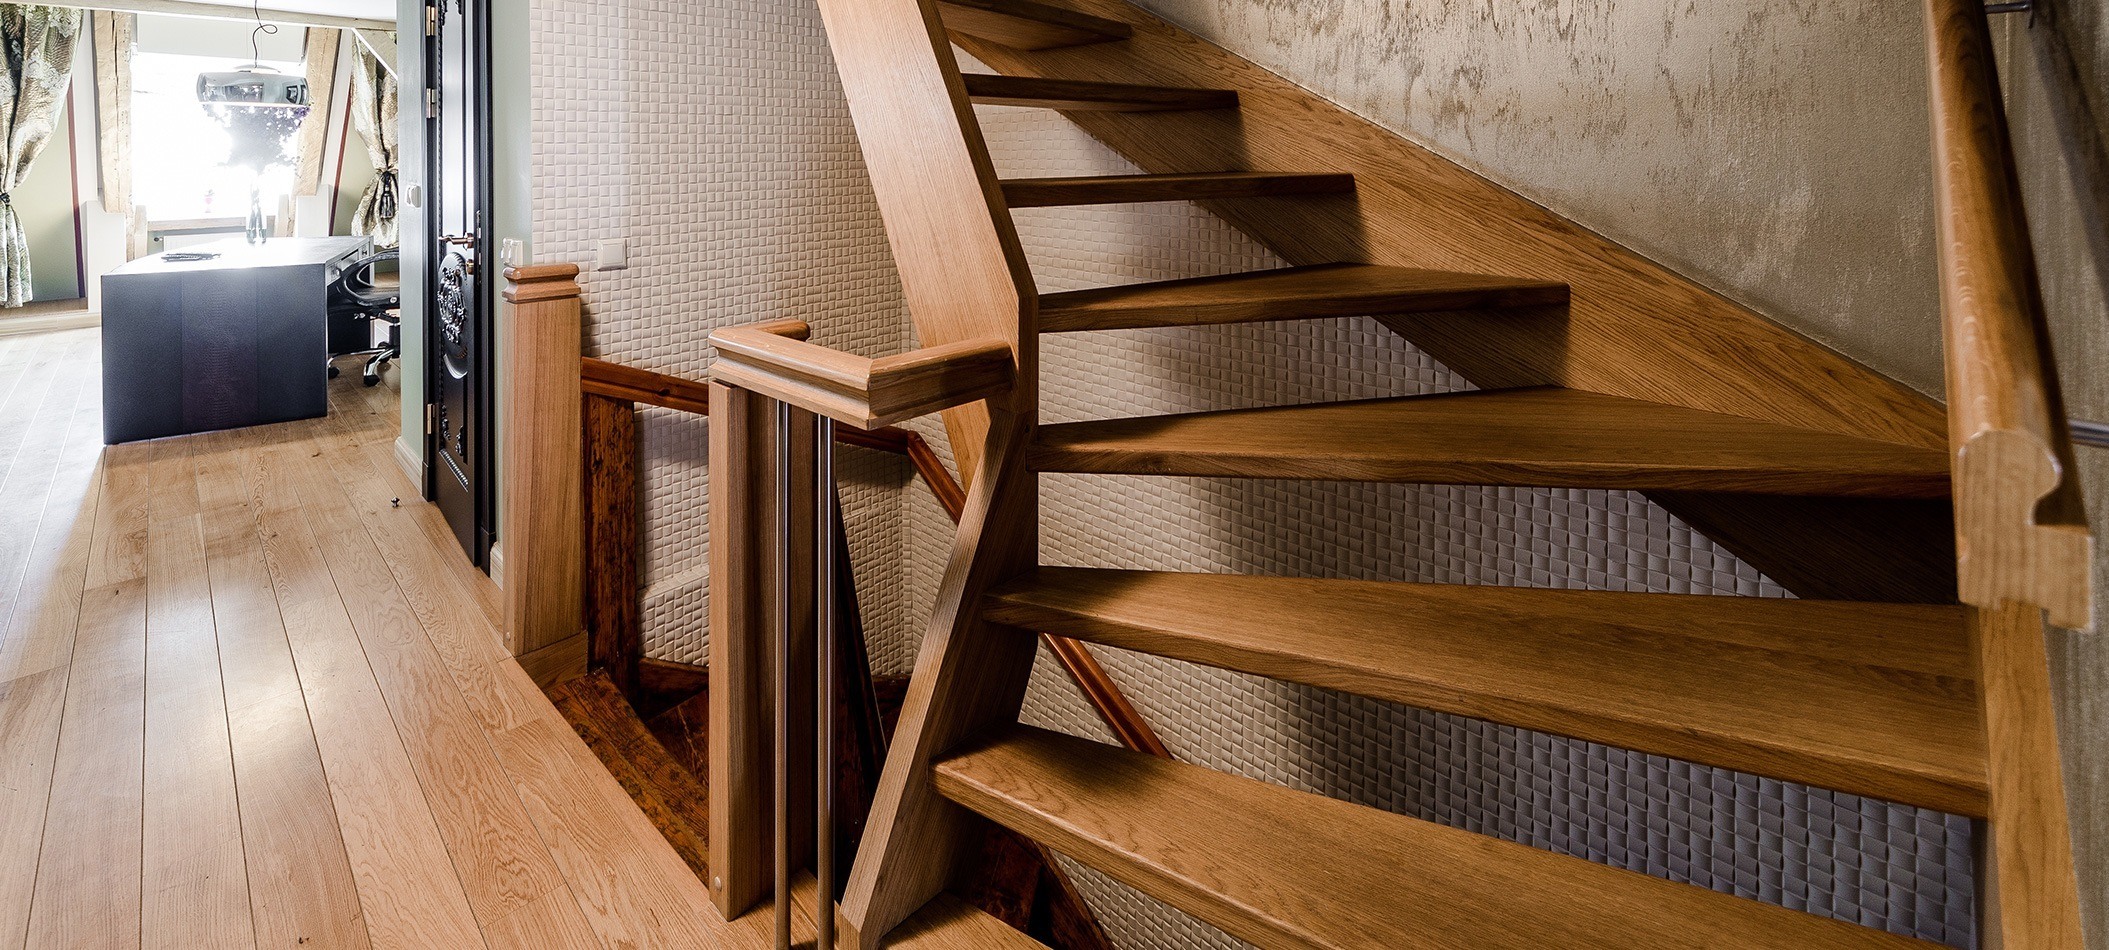 Qual a melhor escada para uso doméstico?